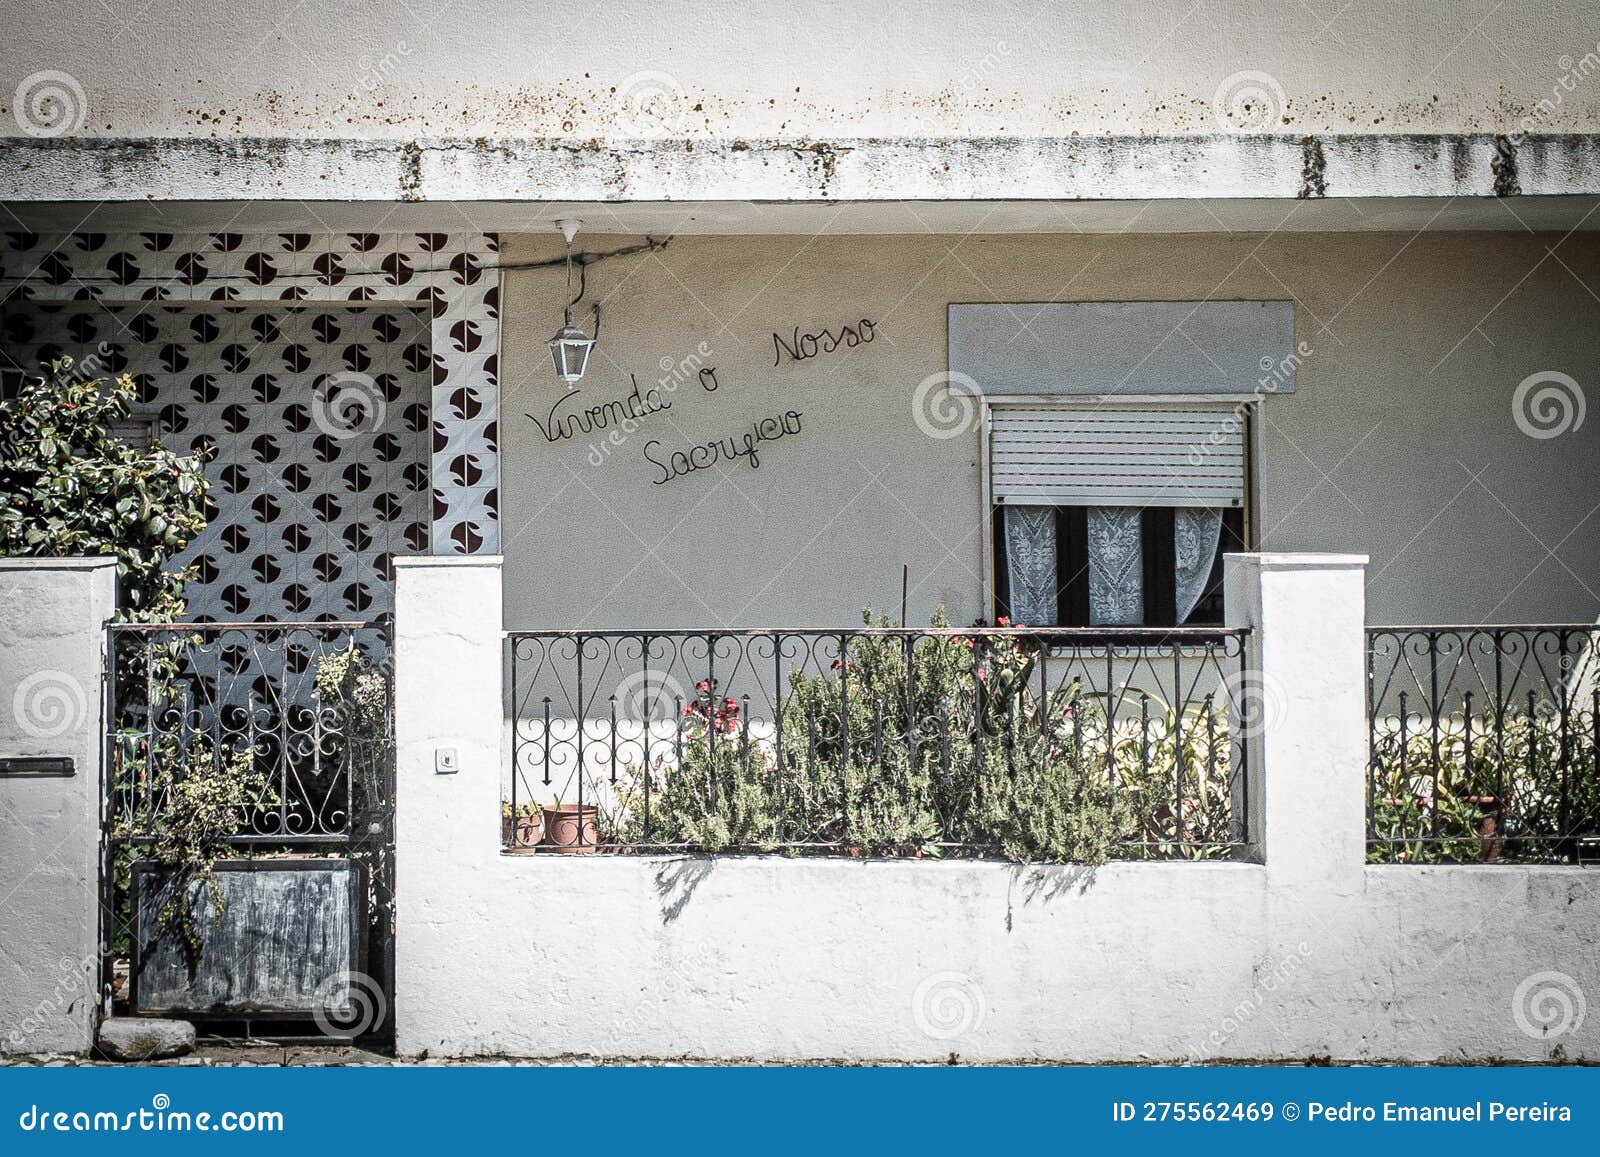 front facade of a residential house identified with the phrase, "vivenda o nosso sacrificio"